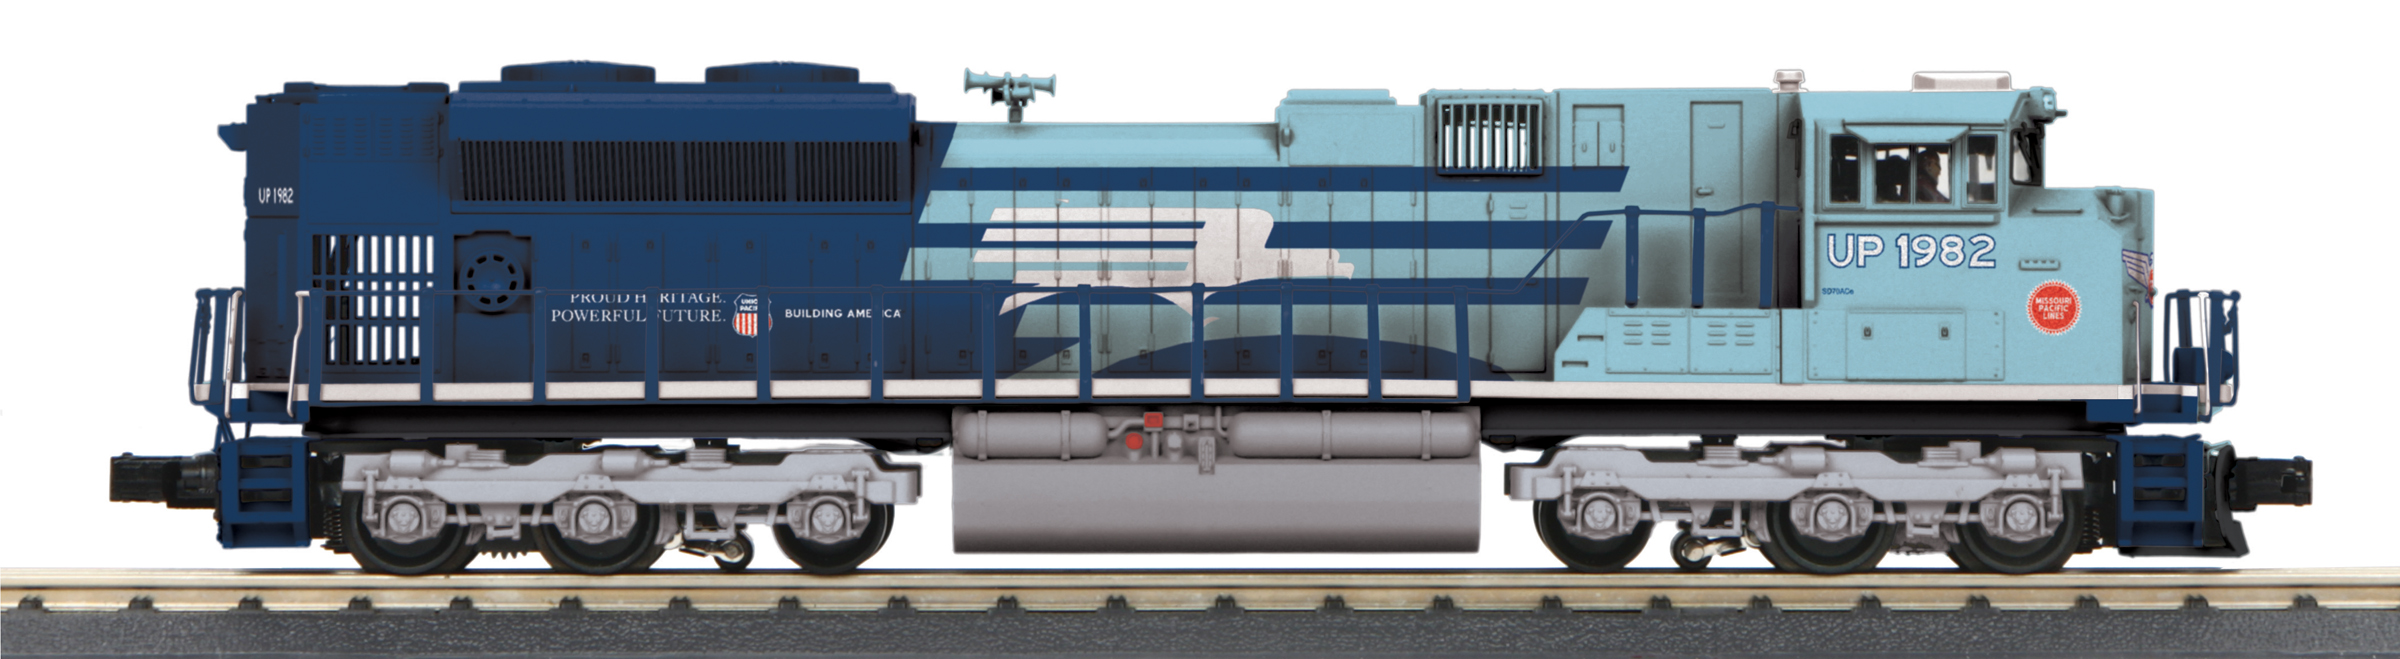 8-Piece Locomotive Cab Figure Set MTH 30-11064 O Gauge 